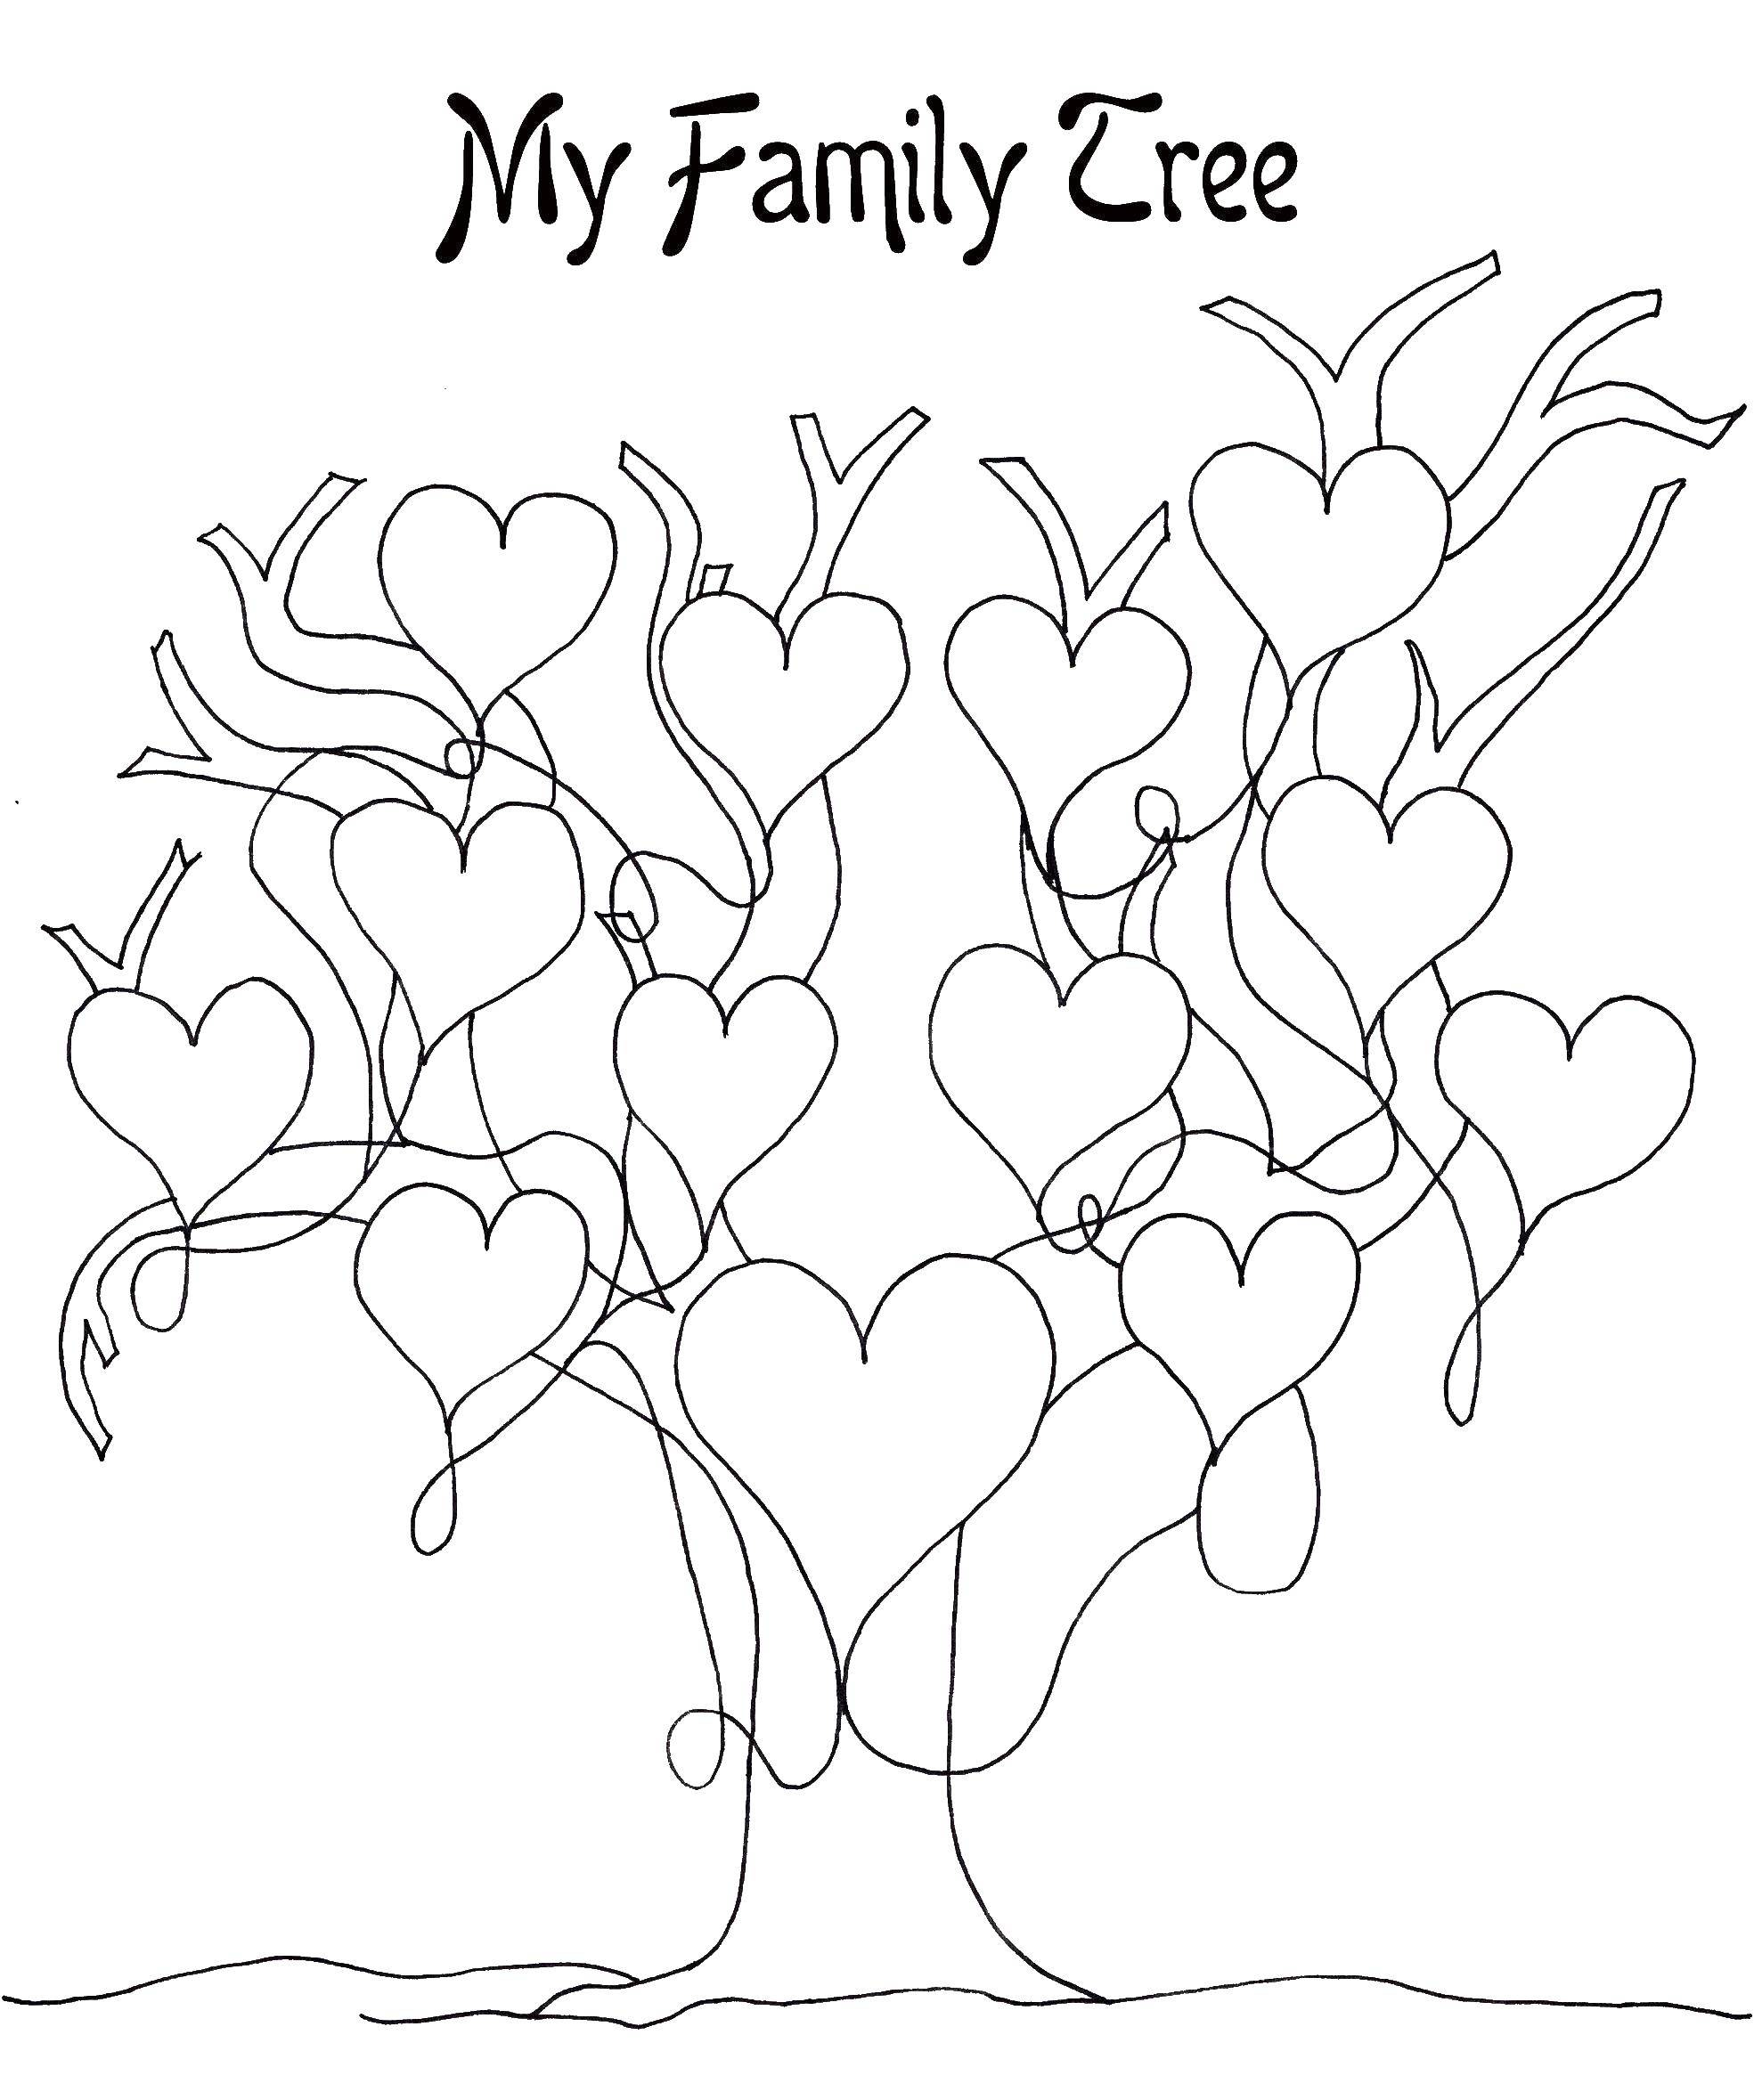 Название: Раскраска Дерево с сердечками. Категория: Семейное дерево. Теги: дерево, сердечки.